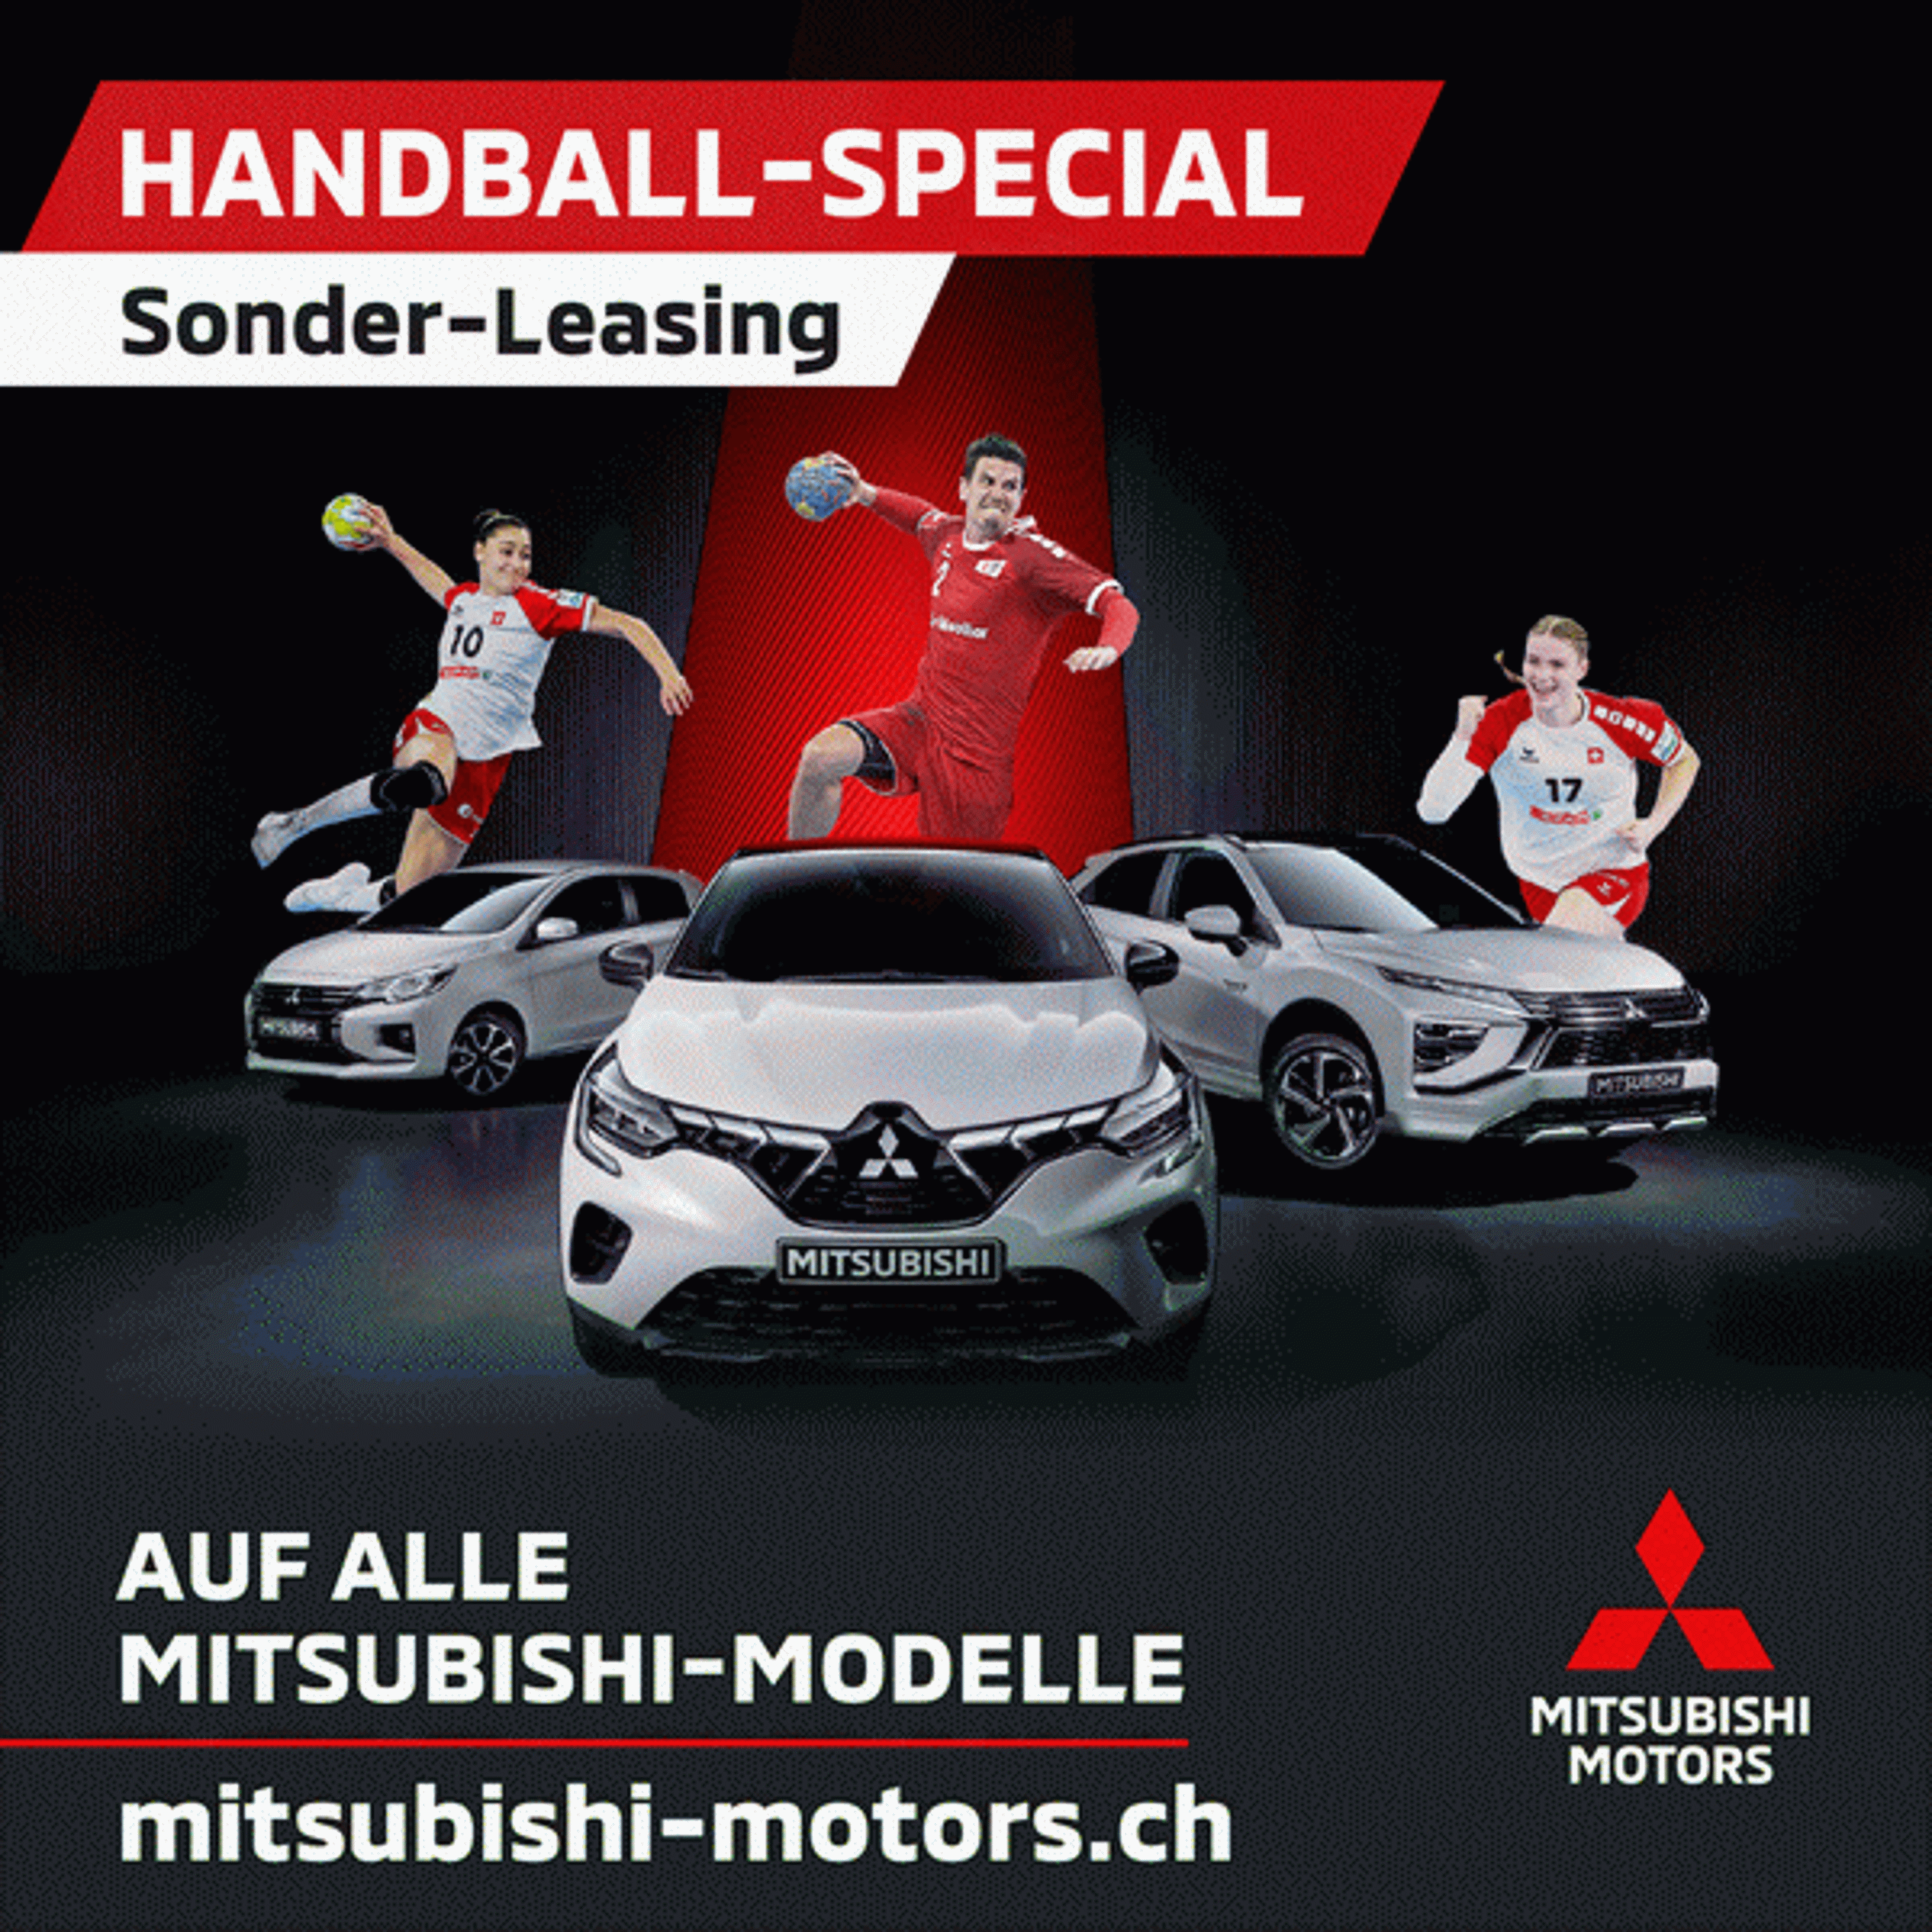 Handball Special Sonder Leasing